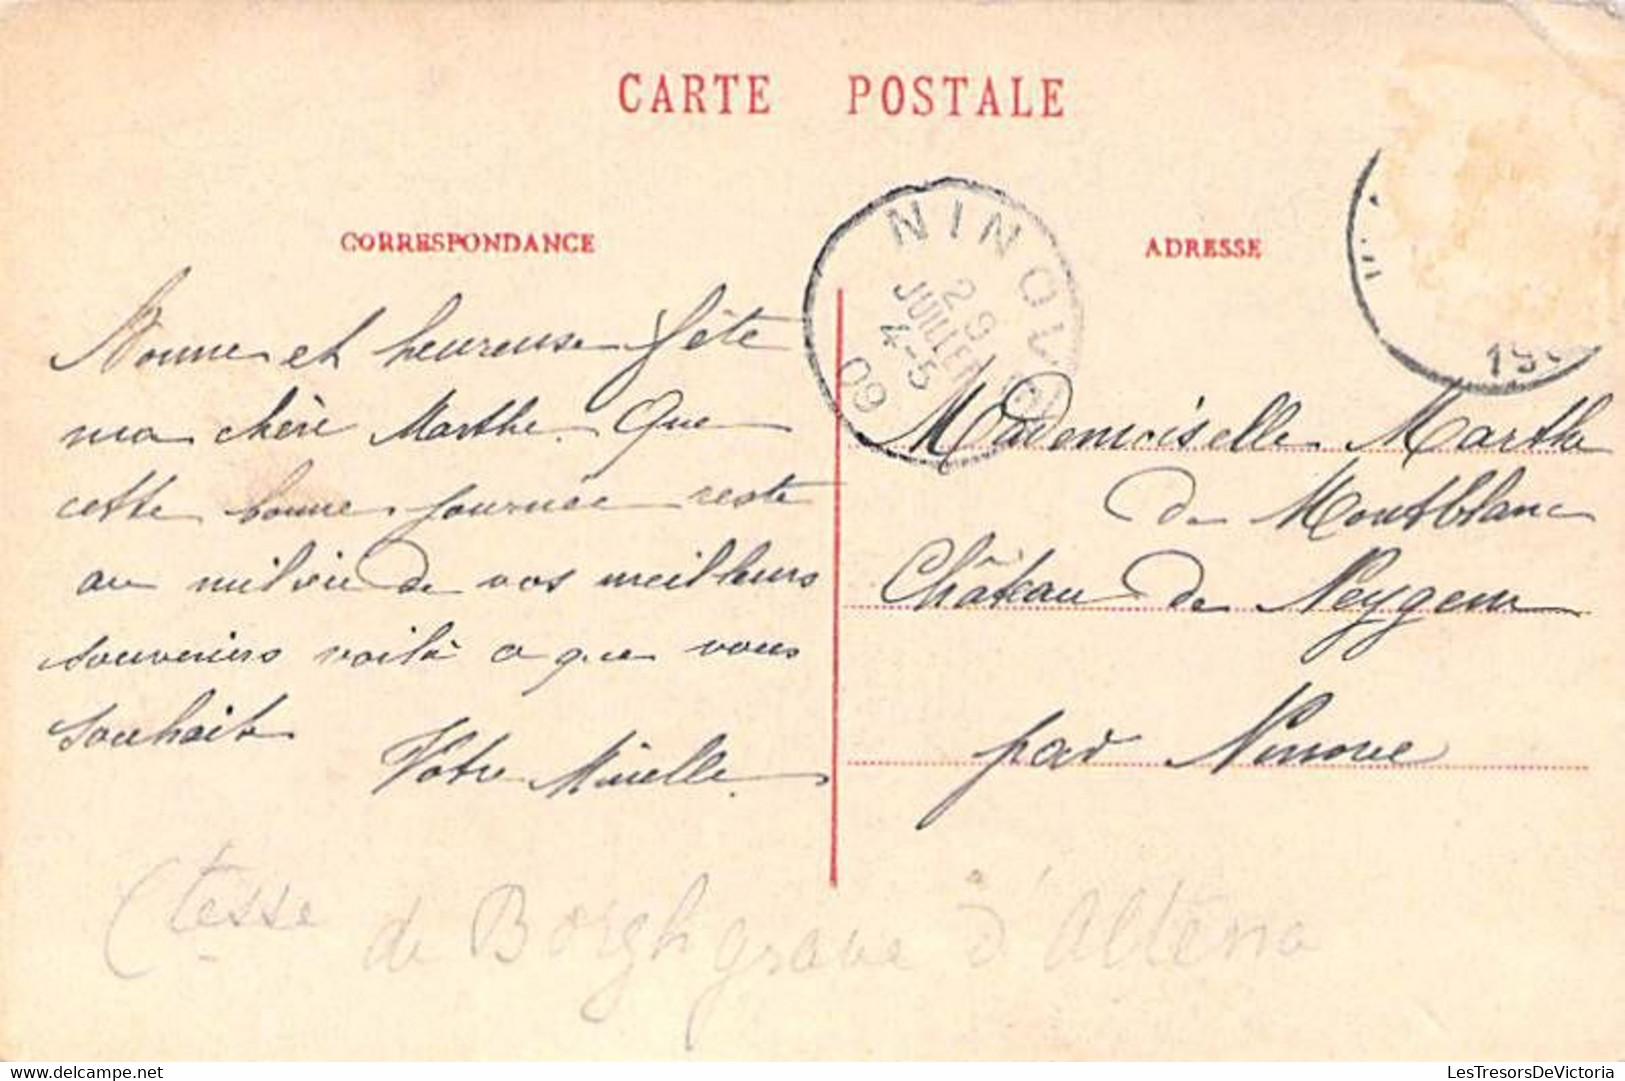 Belgique - Waremme - Château De Bovelingen - Edit. Jeanne - Oblitéré Ninove 1909 - Etang - Carte Postale Ancienne - Waremme